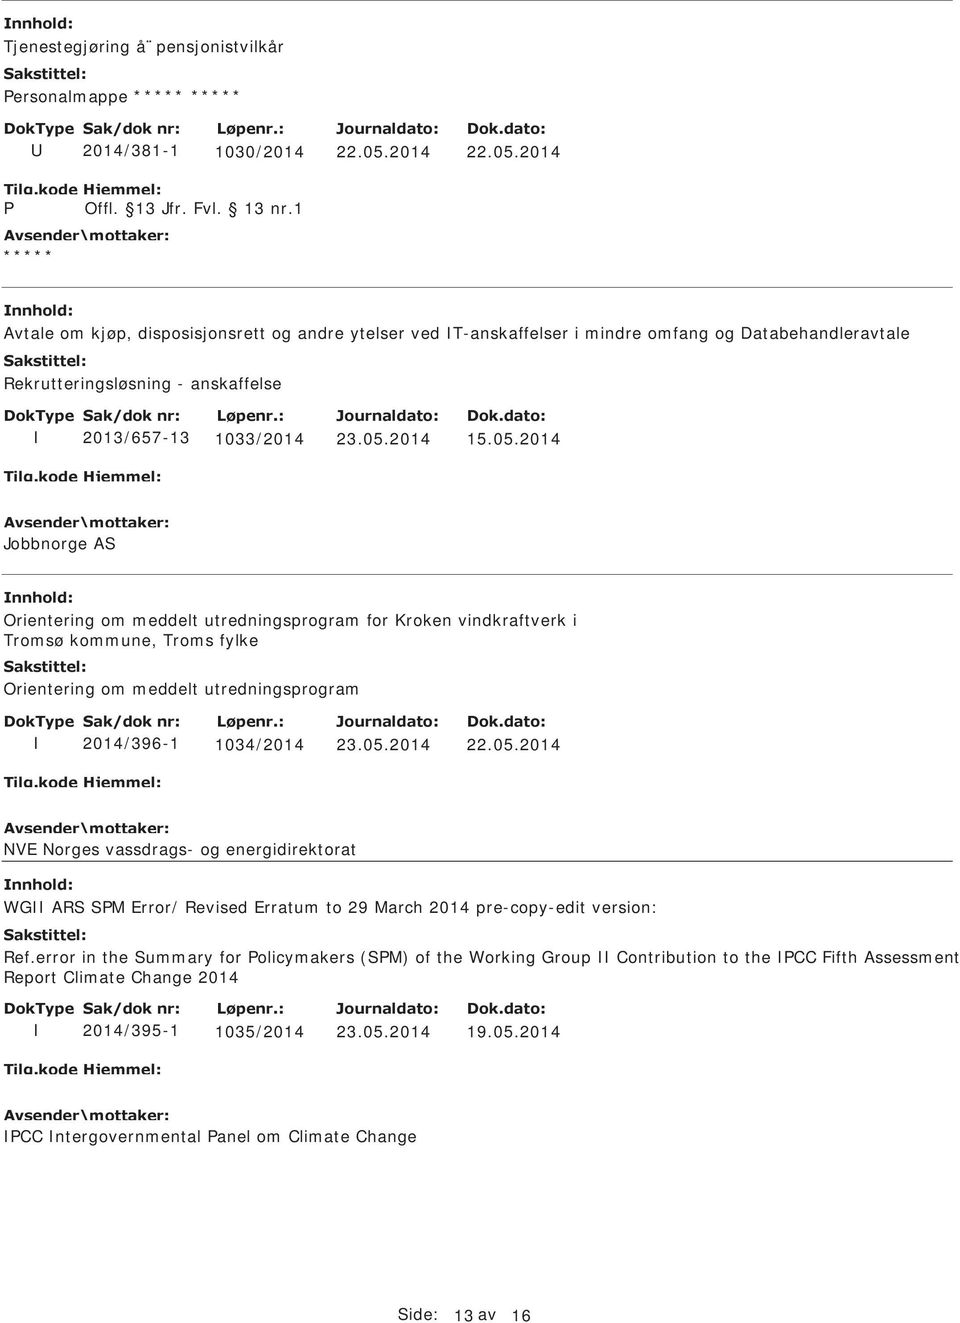 2014 Jobbnorge AS nnhold: Orientering om meddelt utredningsprogram for Kroken vindkraftverk i Tromsø kommune, Troms fylke Orientering om meddelt utredningsprogram 2014/396-1 1034/2014 NVE Norges